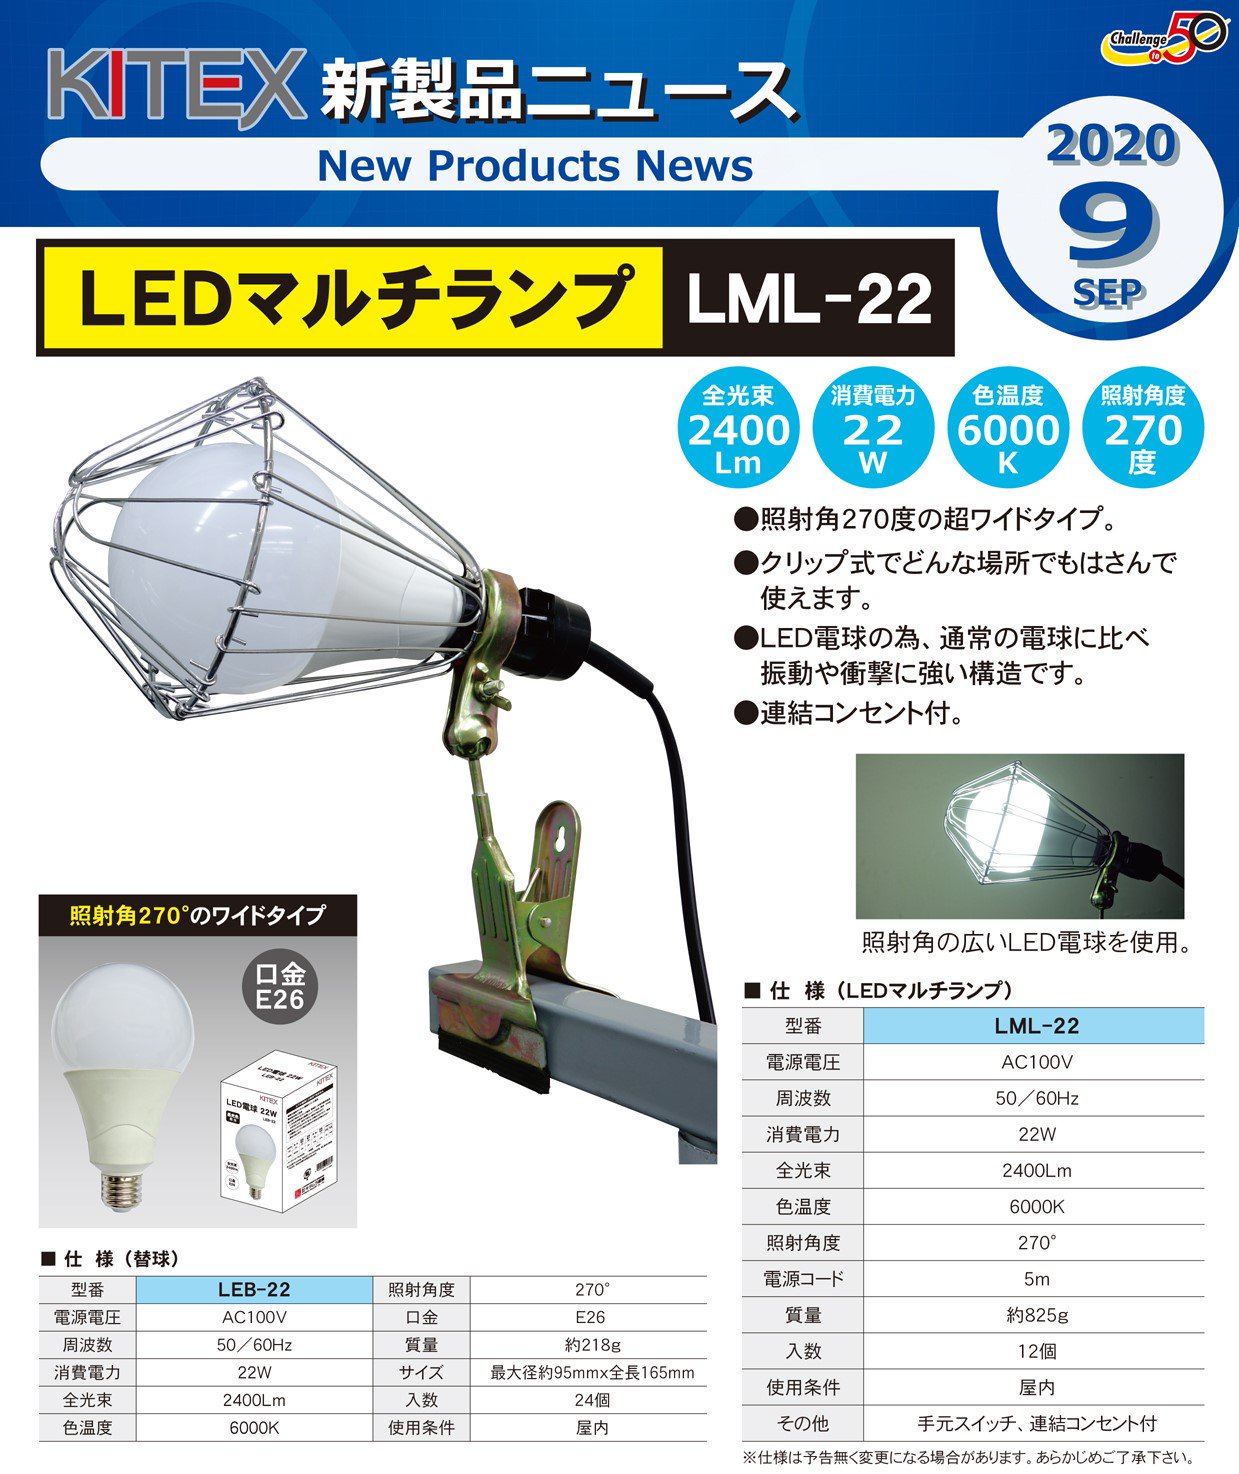 キタムラ産業 KITEX LEDマルチランプ LML-22